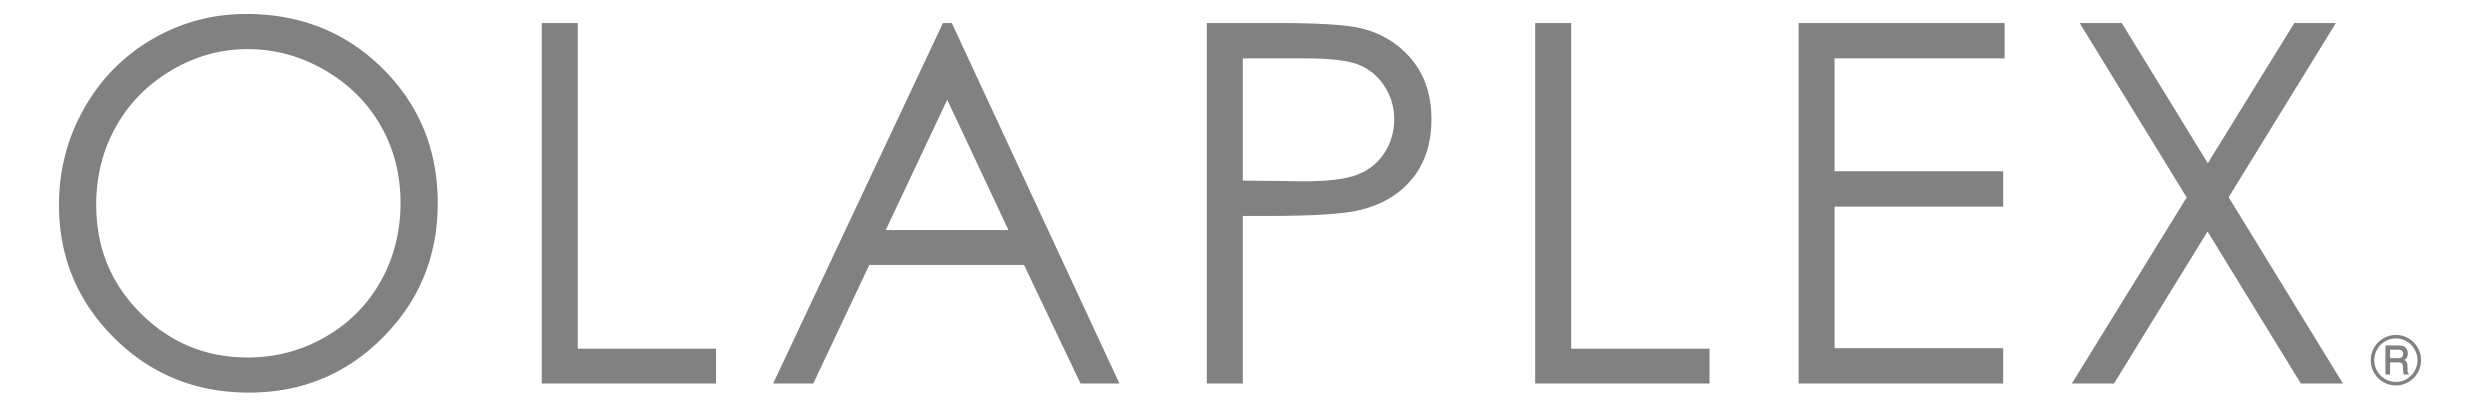 olaplex-logo.png